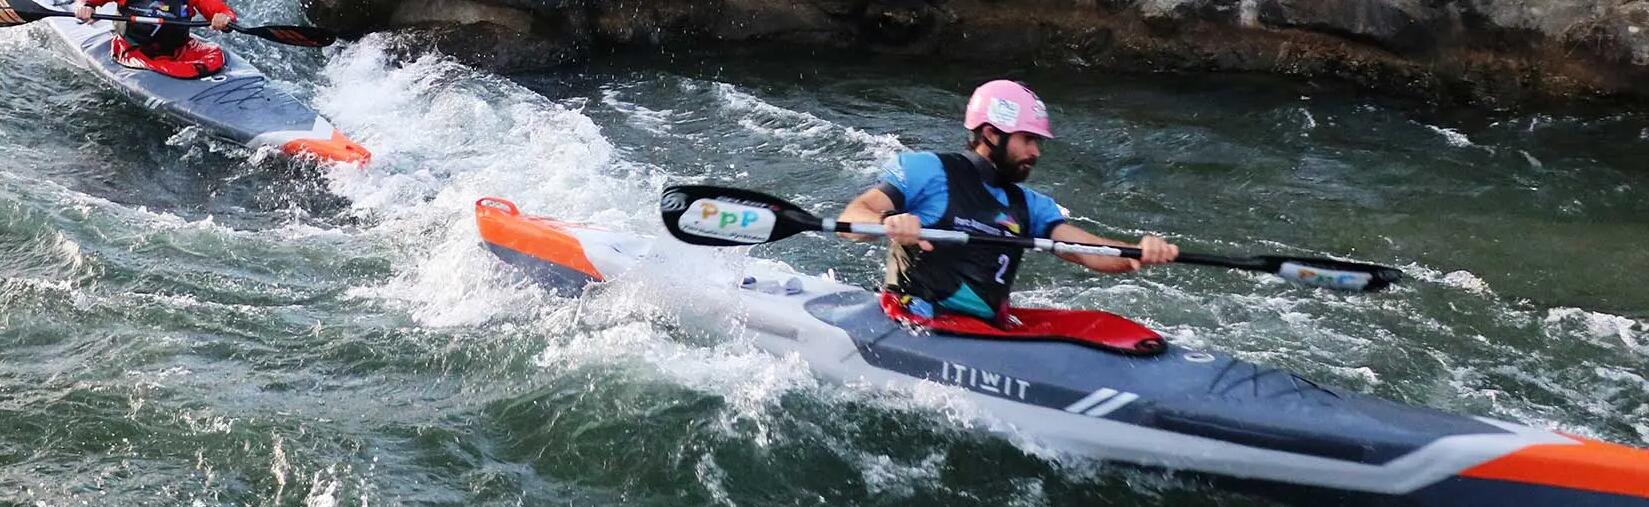 kayak cross compétition itiwit